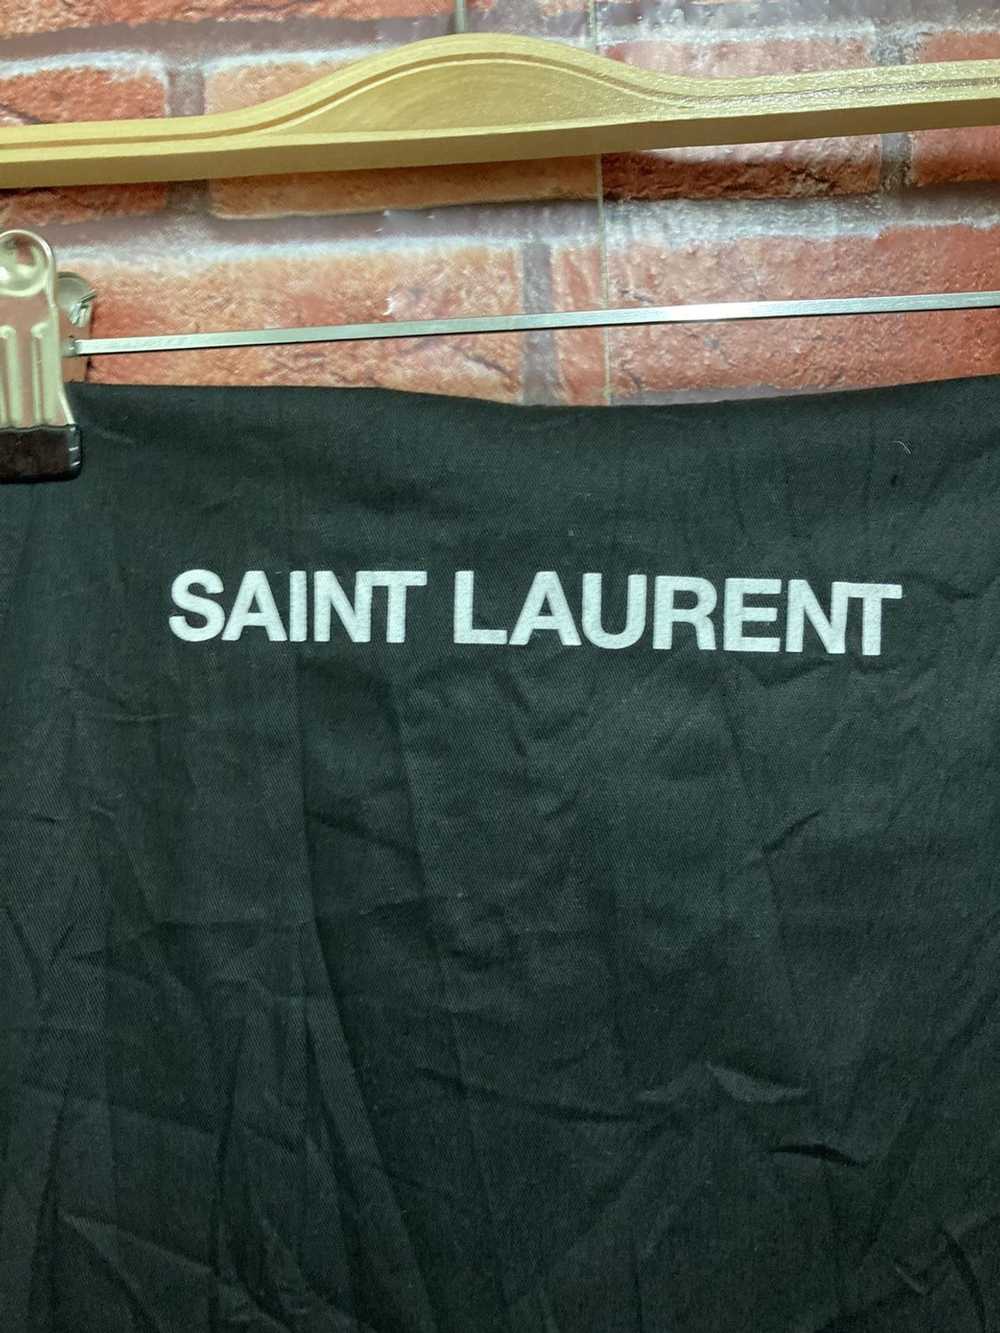 Saint Laurent Paris Saint Laurent - image 10